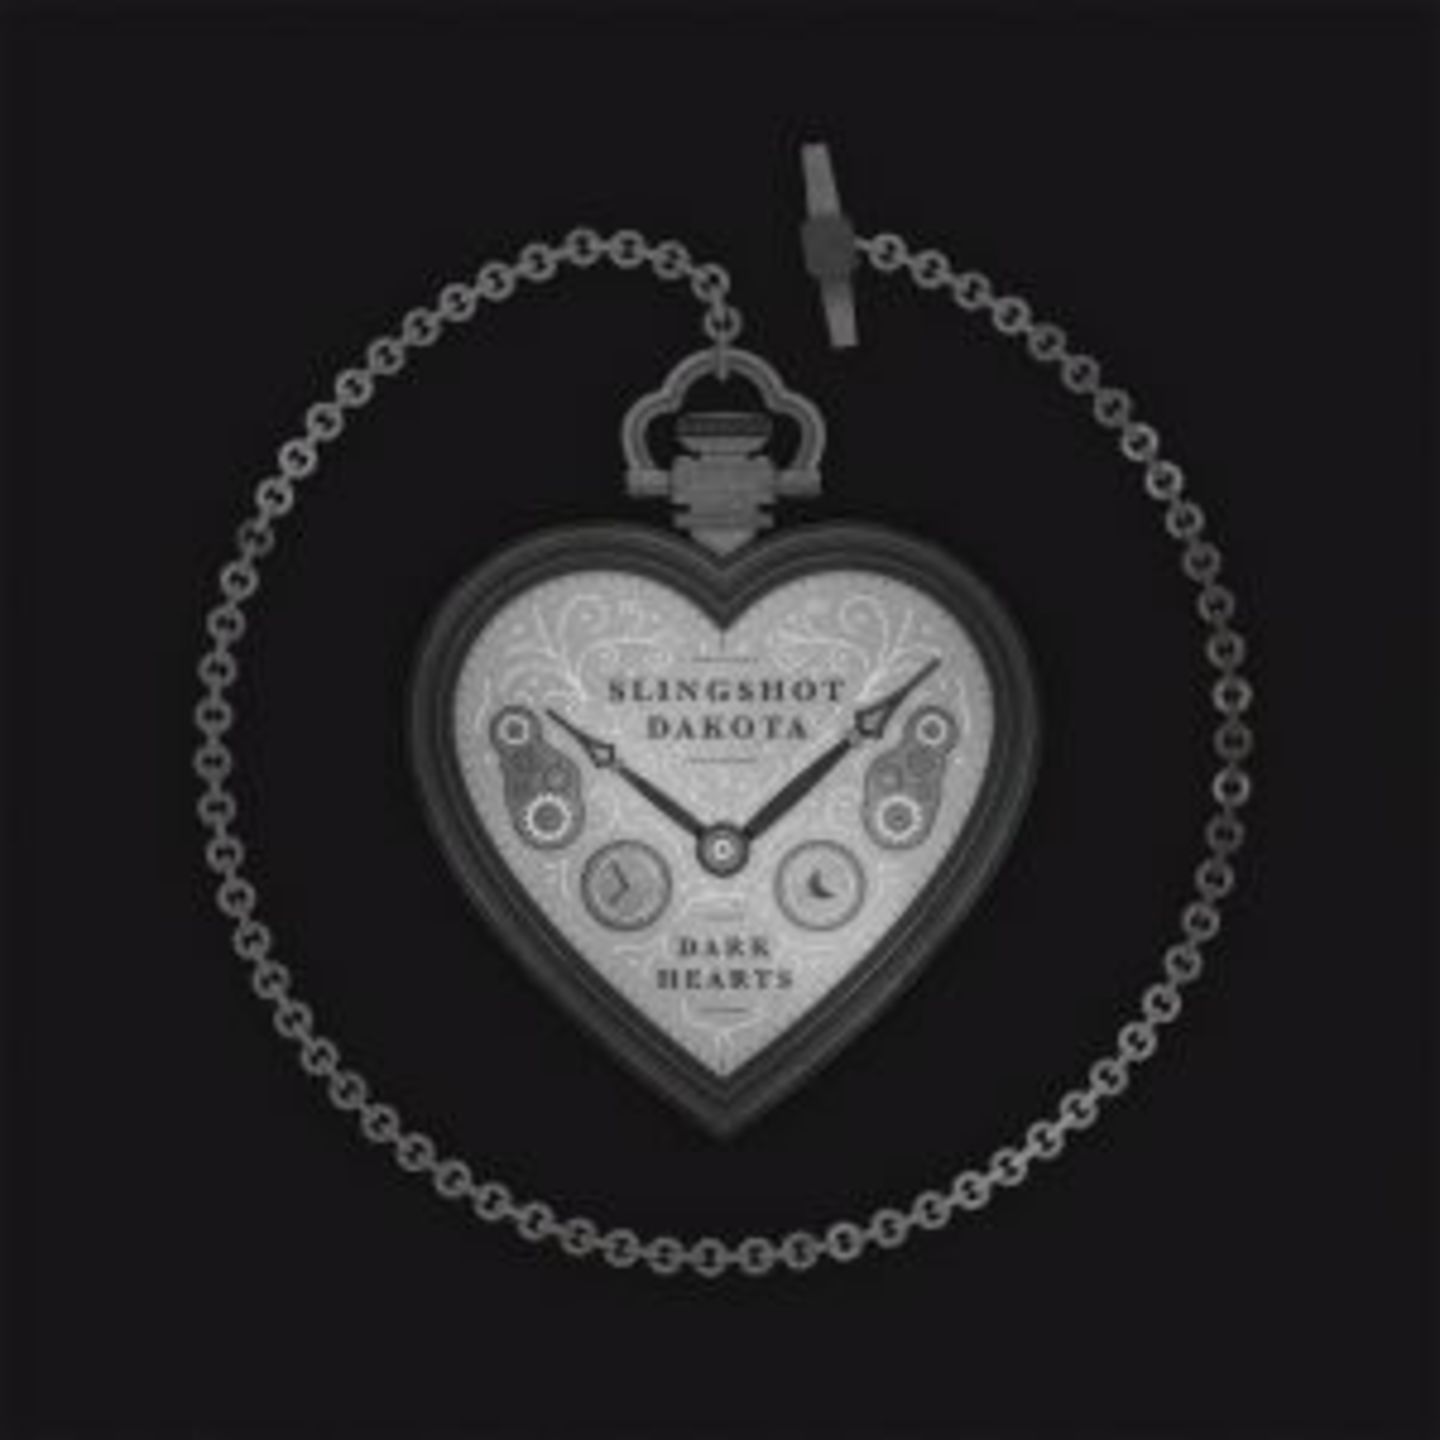 SLINGSHOT DAKOTA - Dark Hearts LP